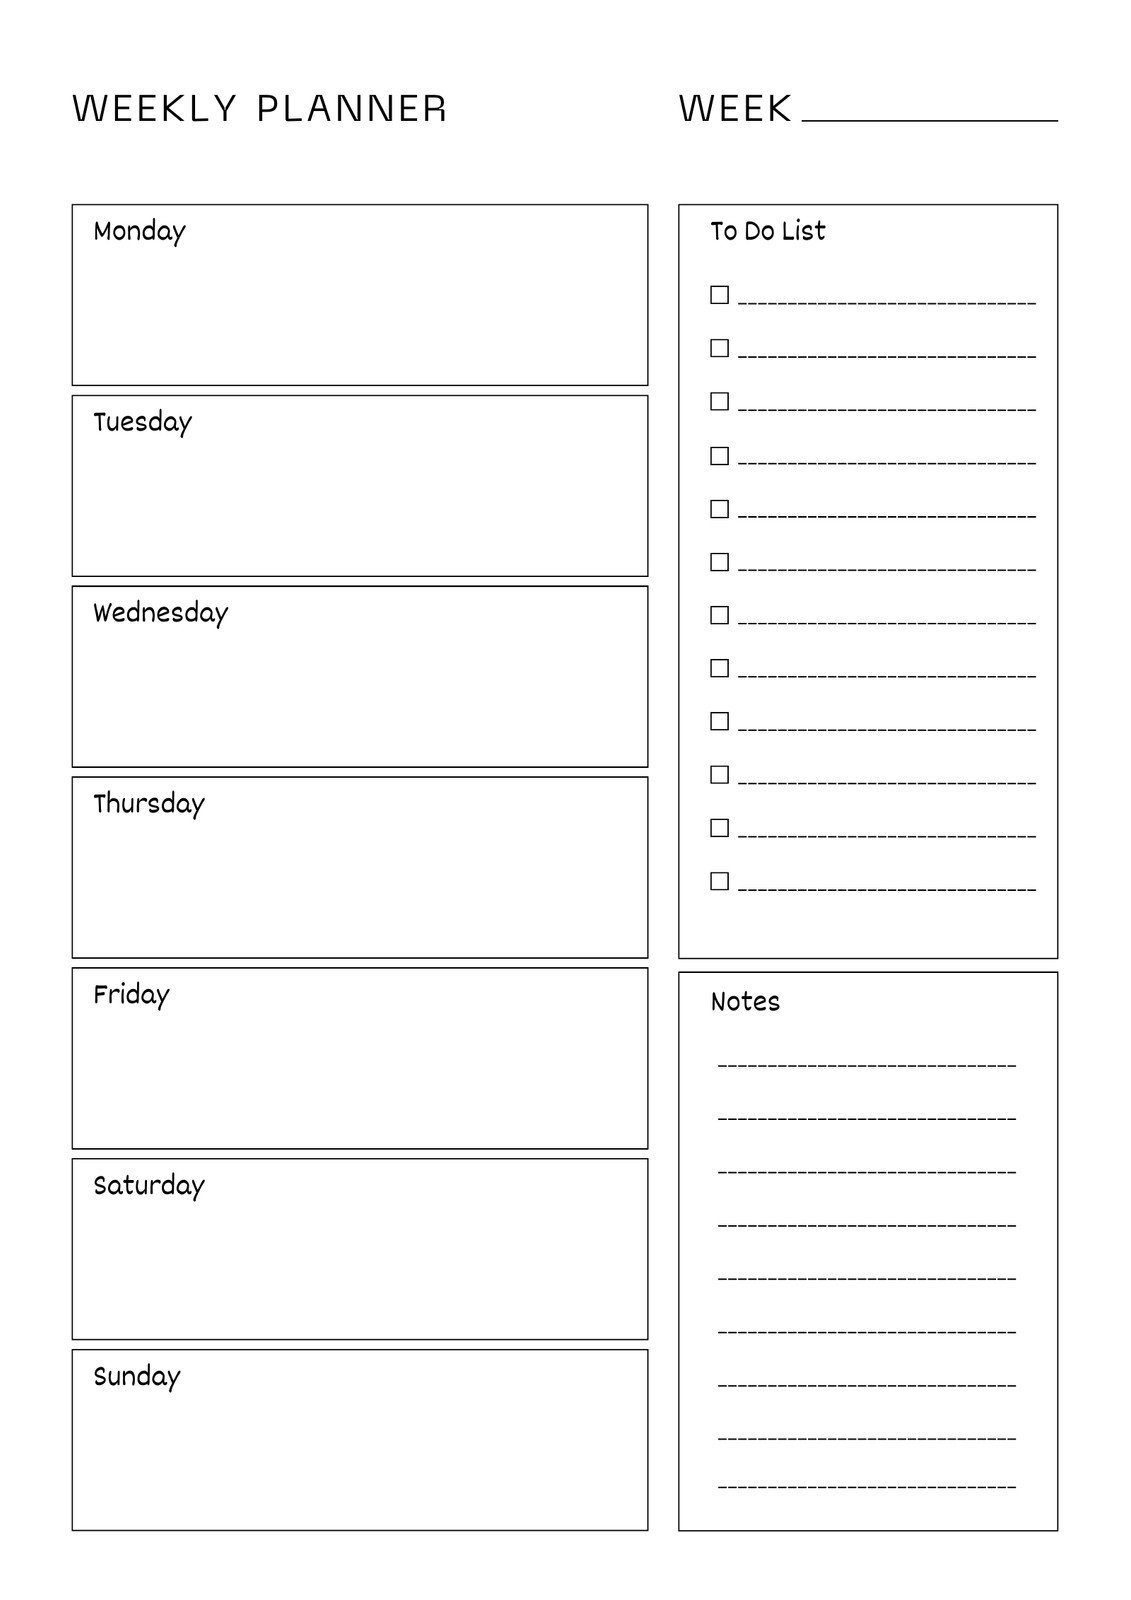 Weekly planner printable template